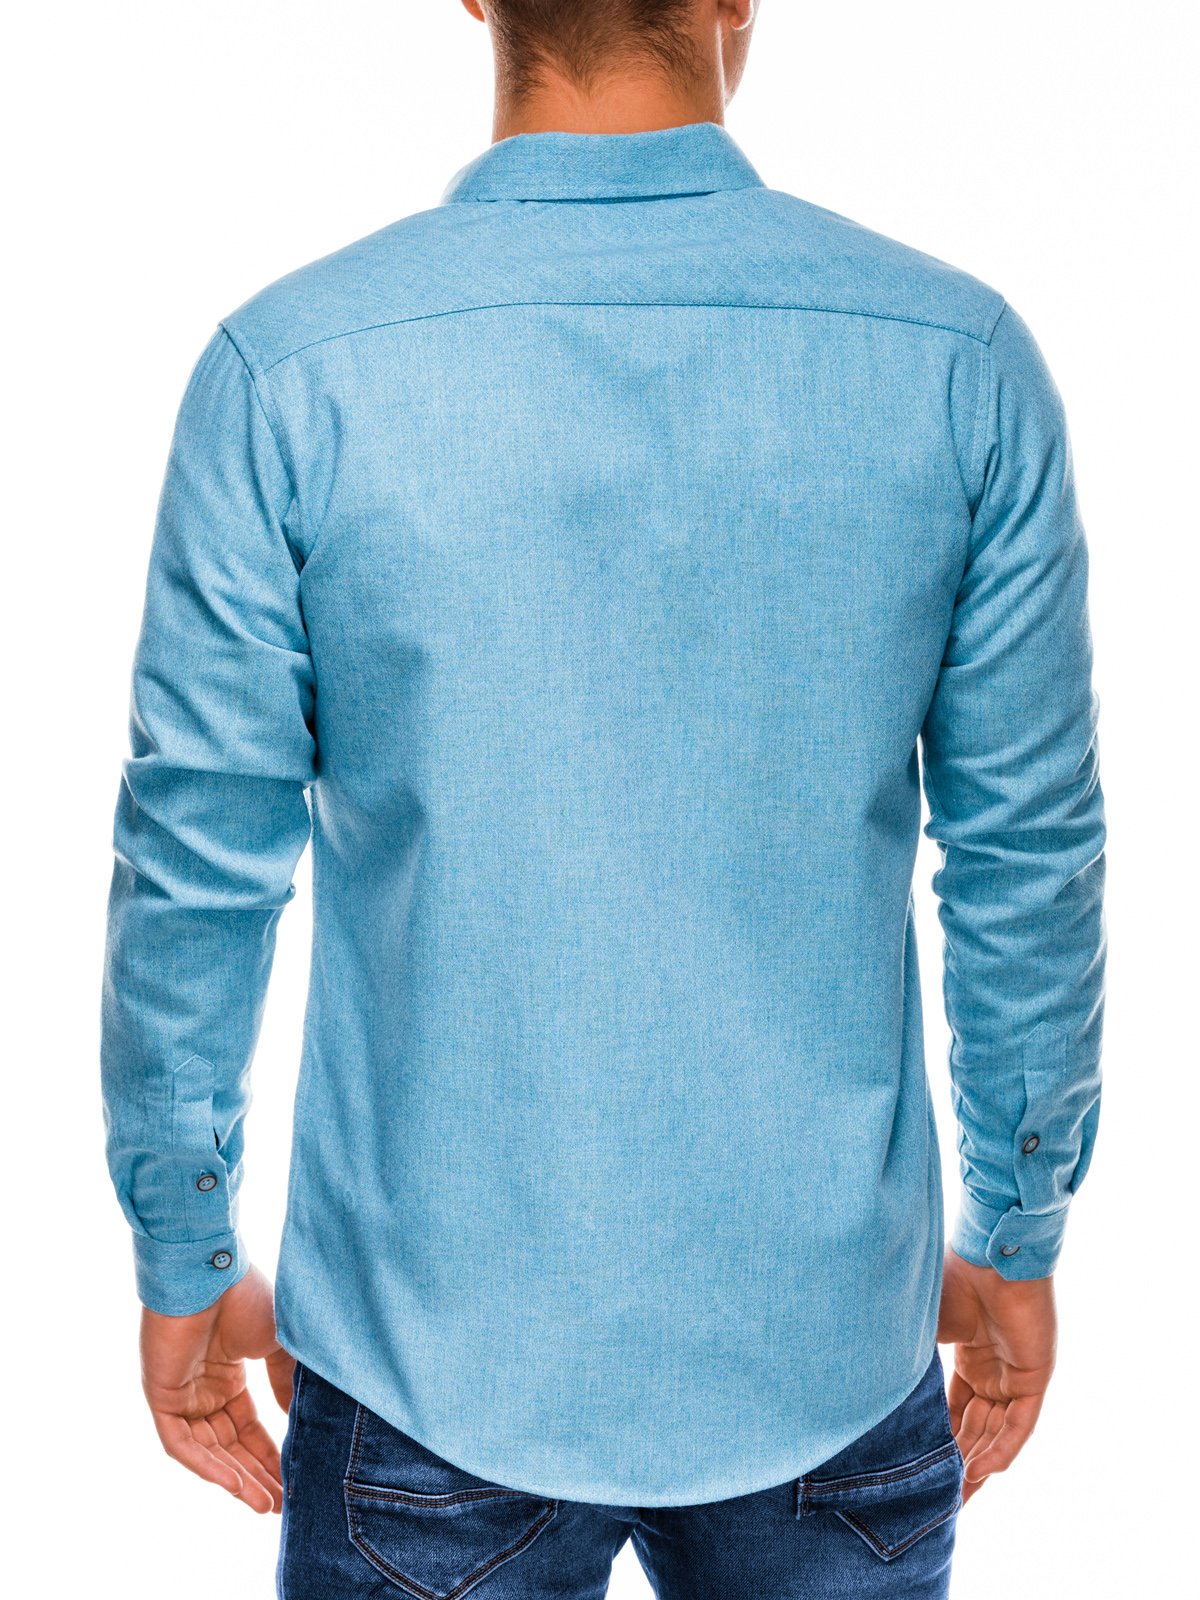 light blue shirt for men